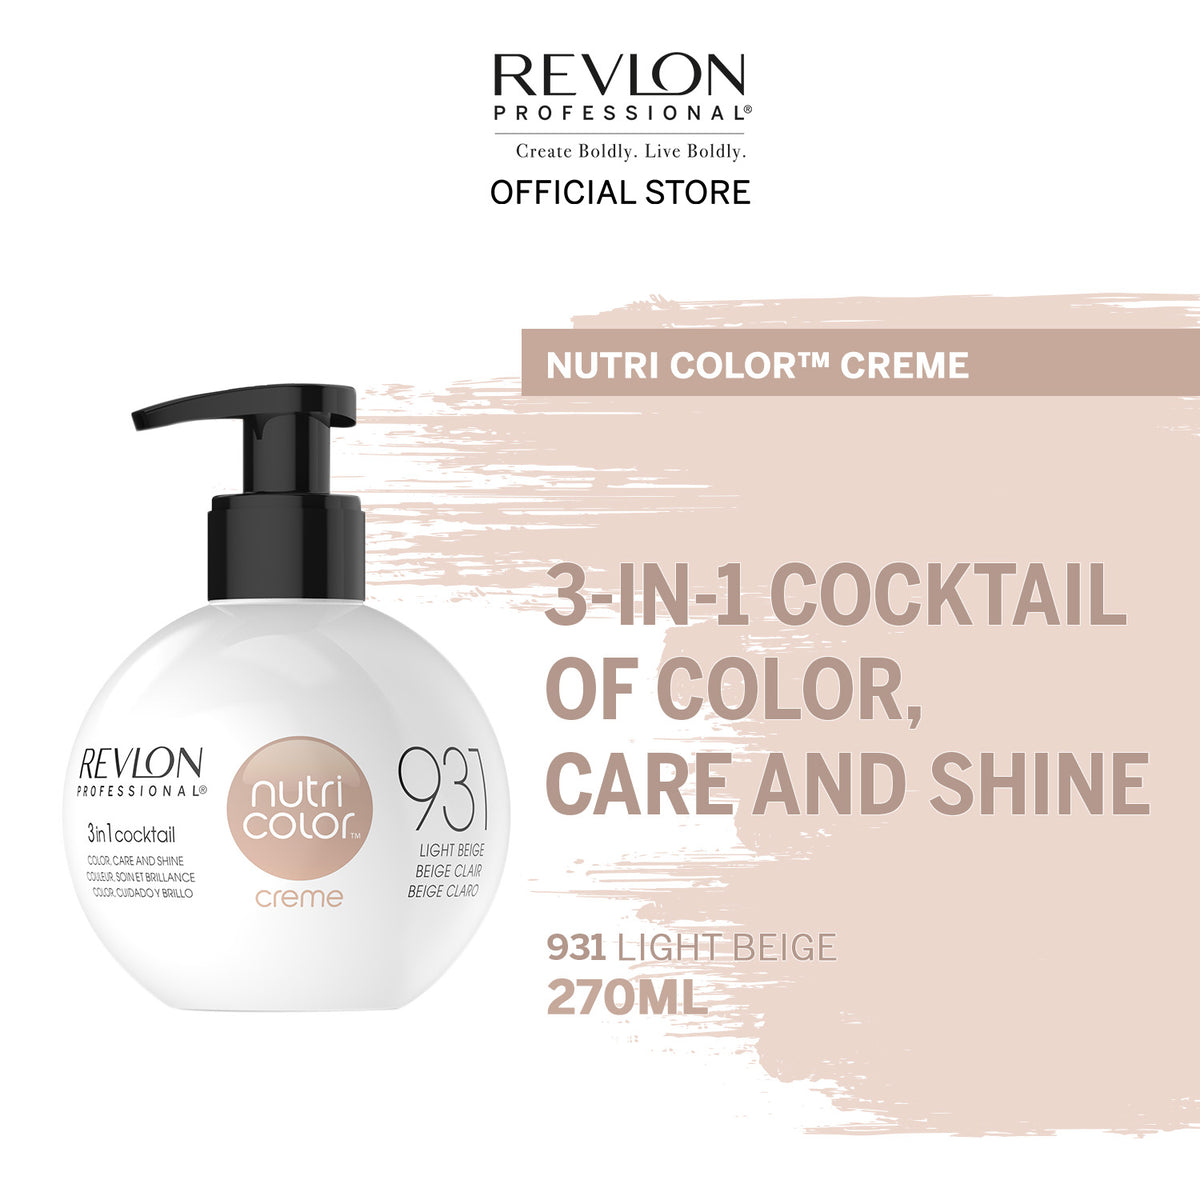 Revlon Professional Nutri Color Creme 931 Beige 270ml New Summit Colors Distribution